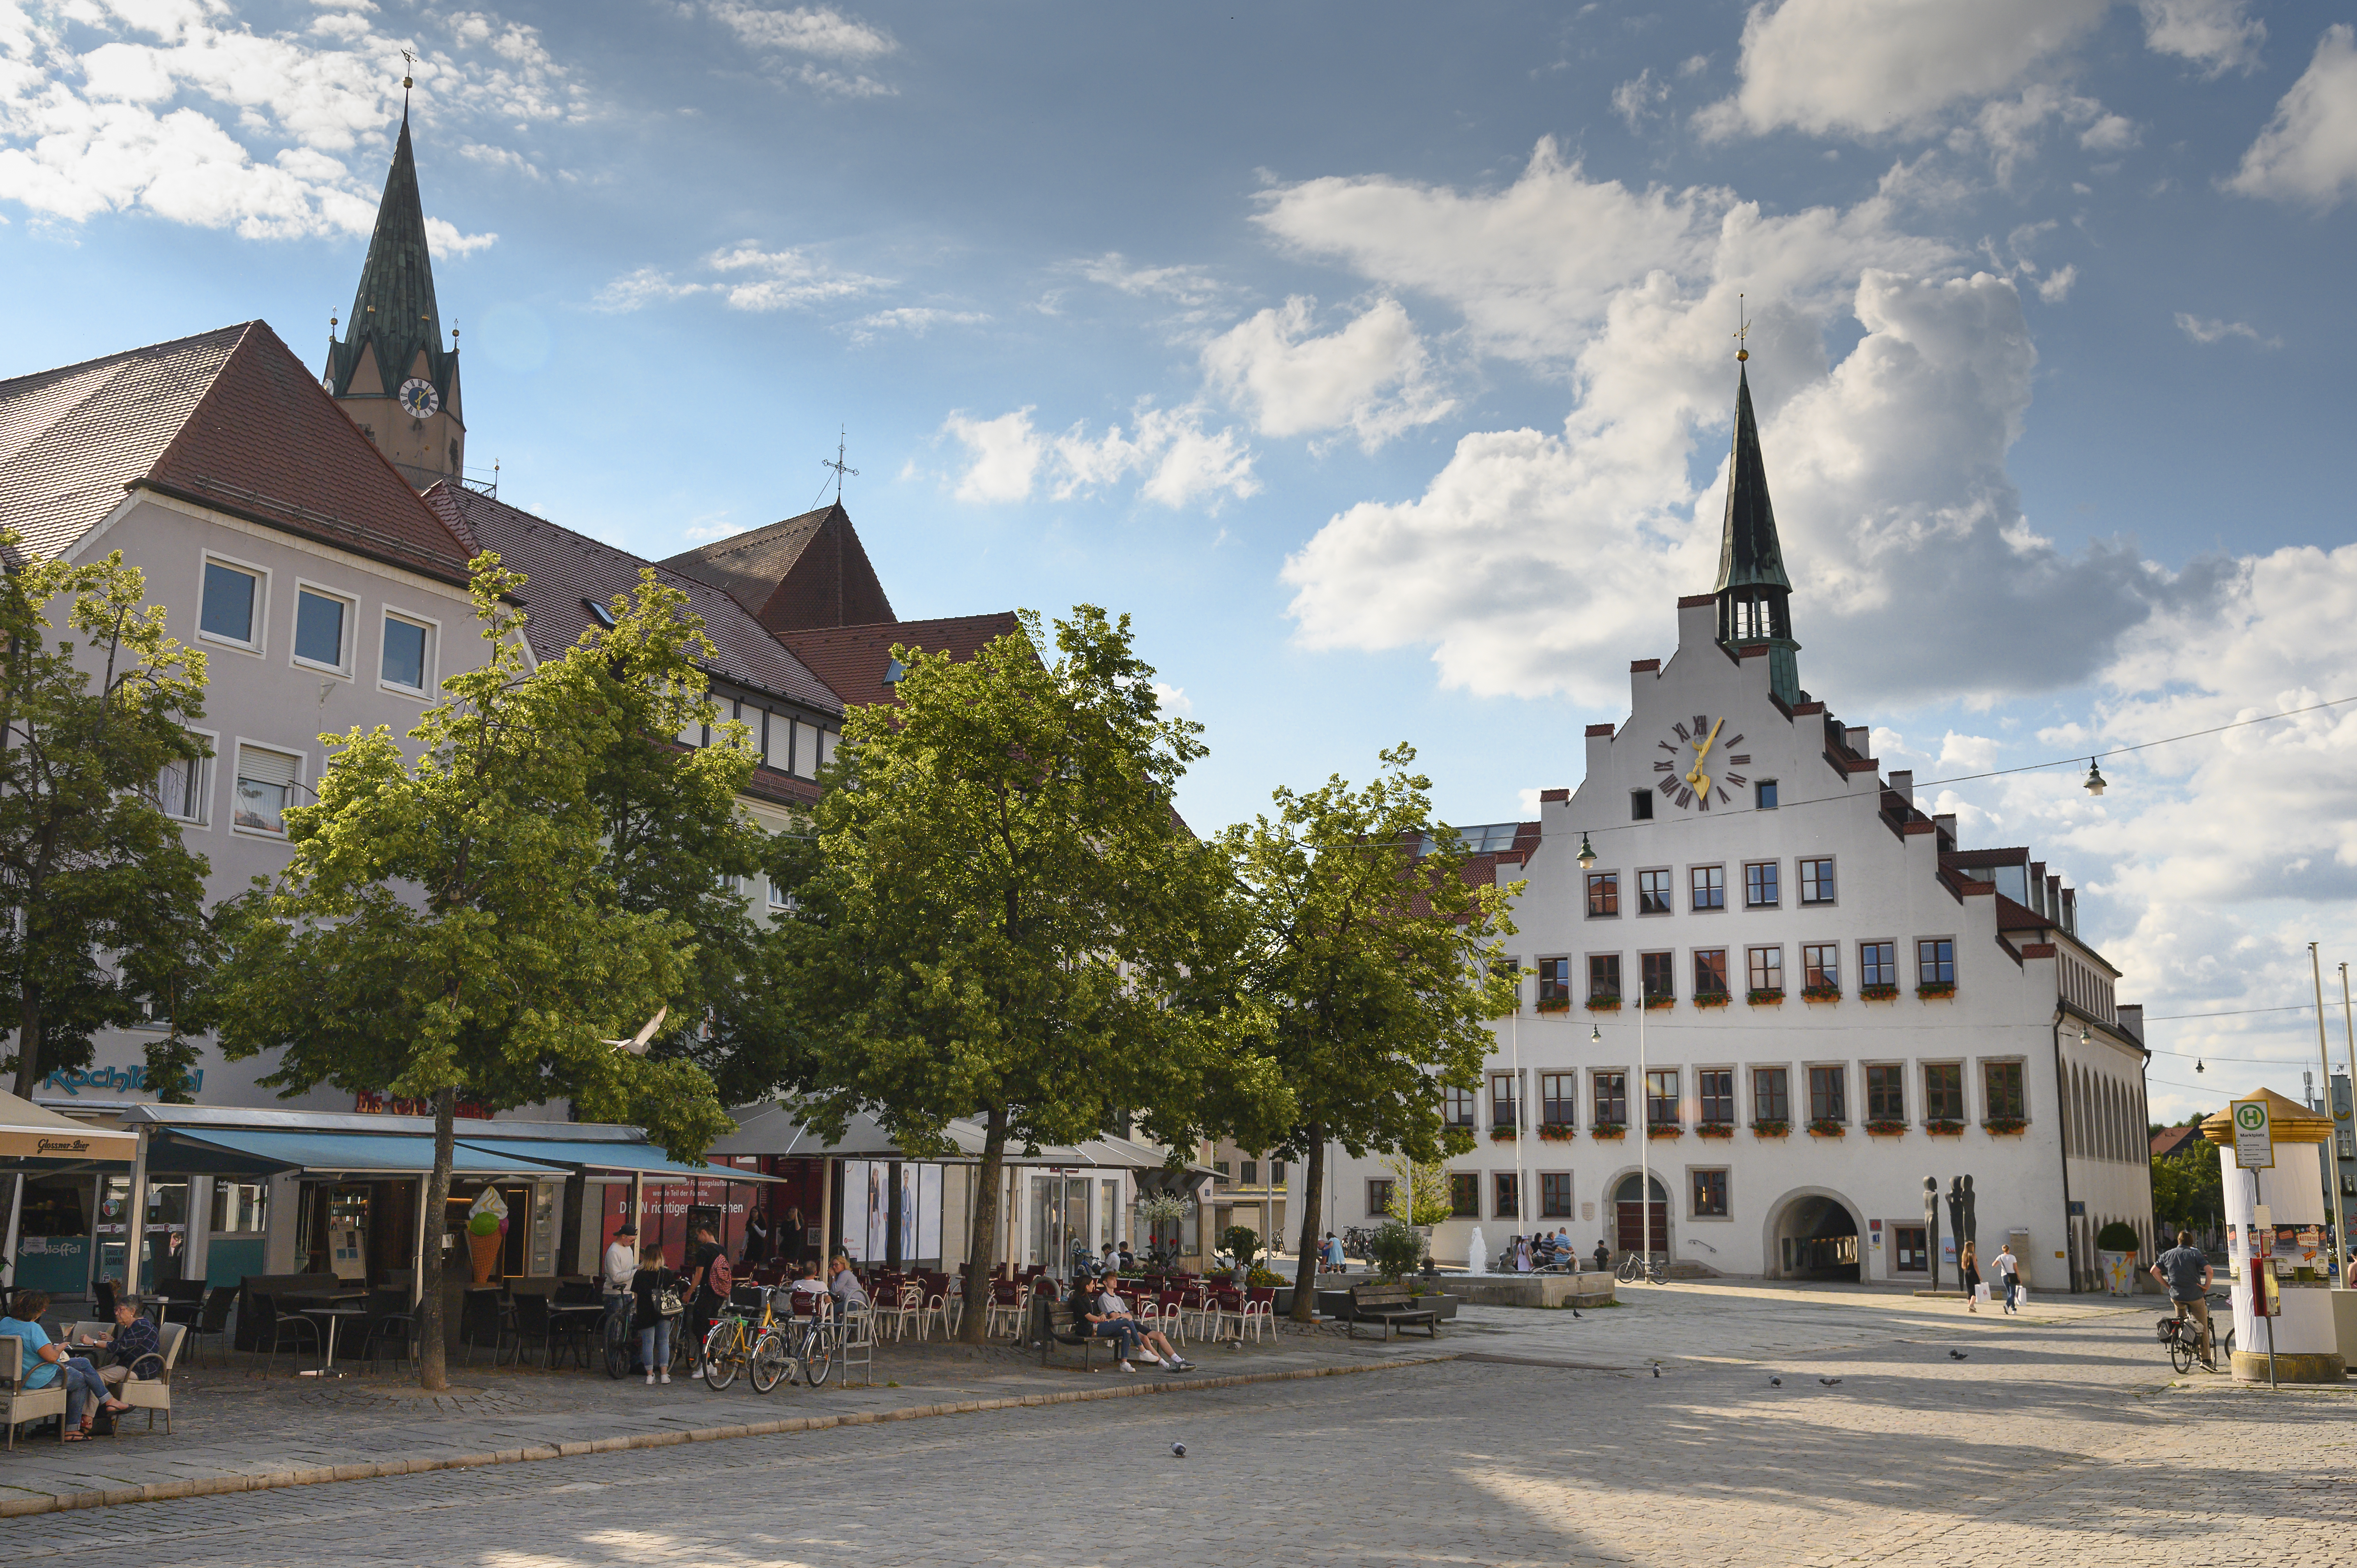 Rathaus Neumarkt